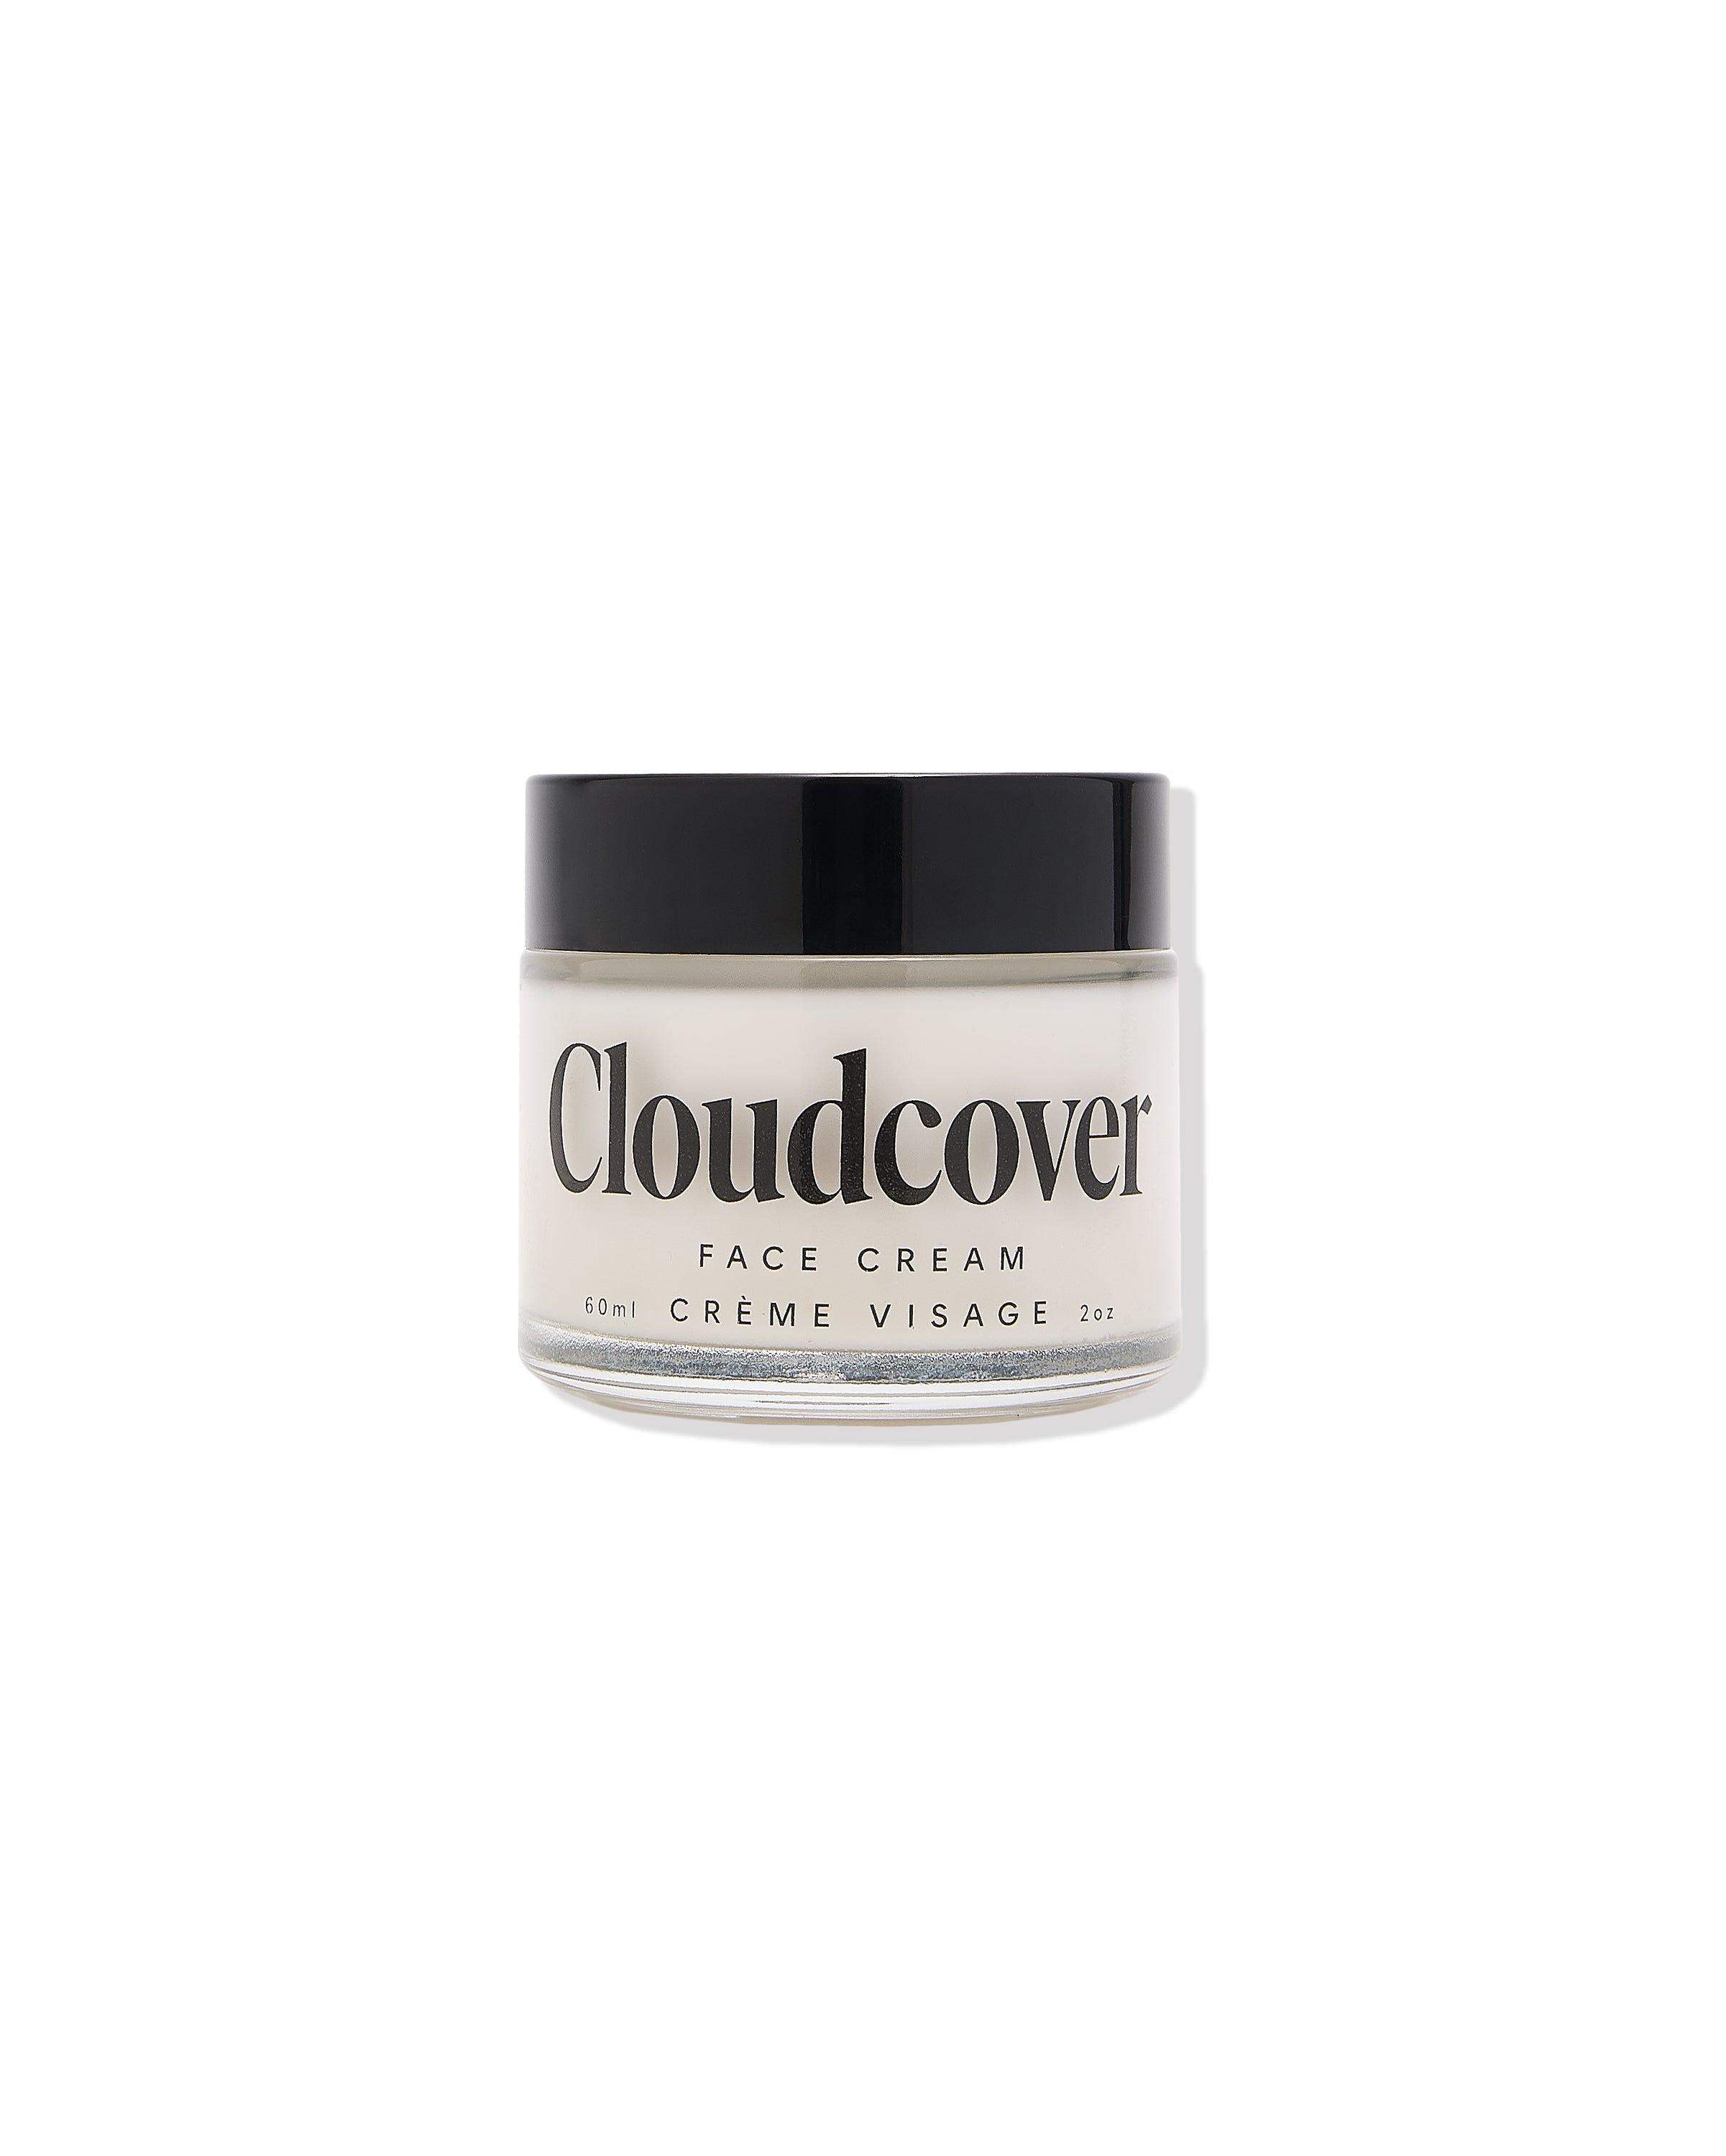 CloudCover Face Cream